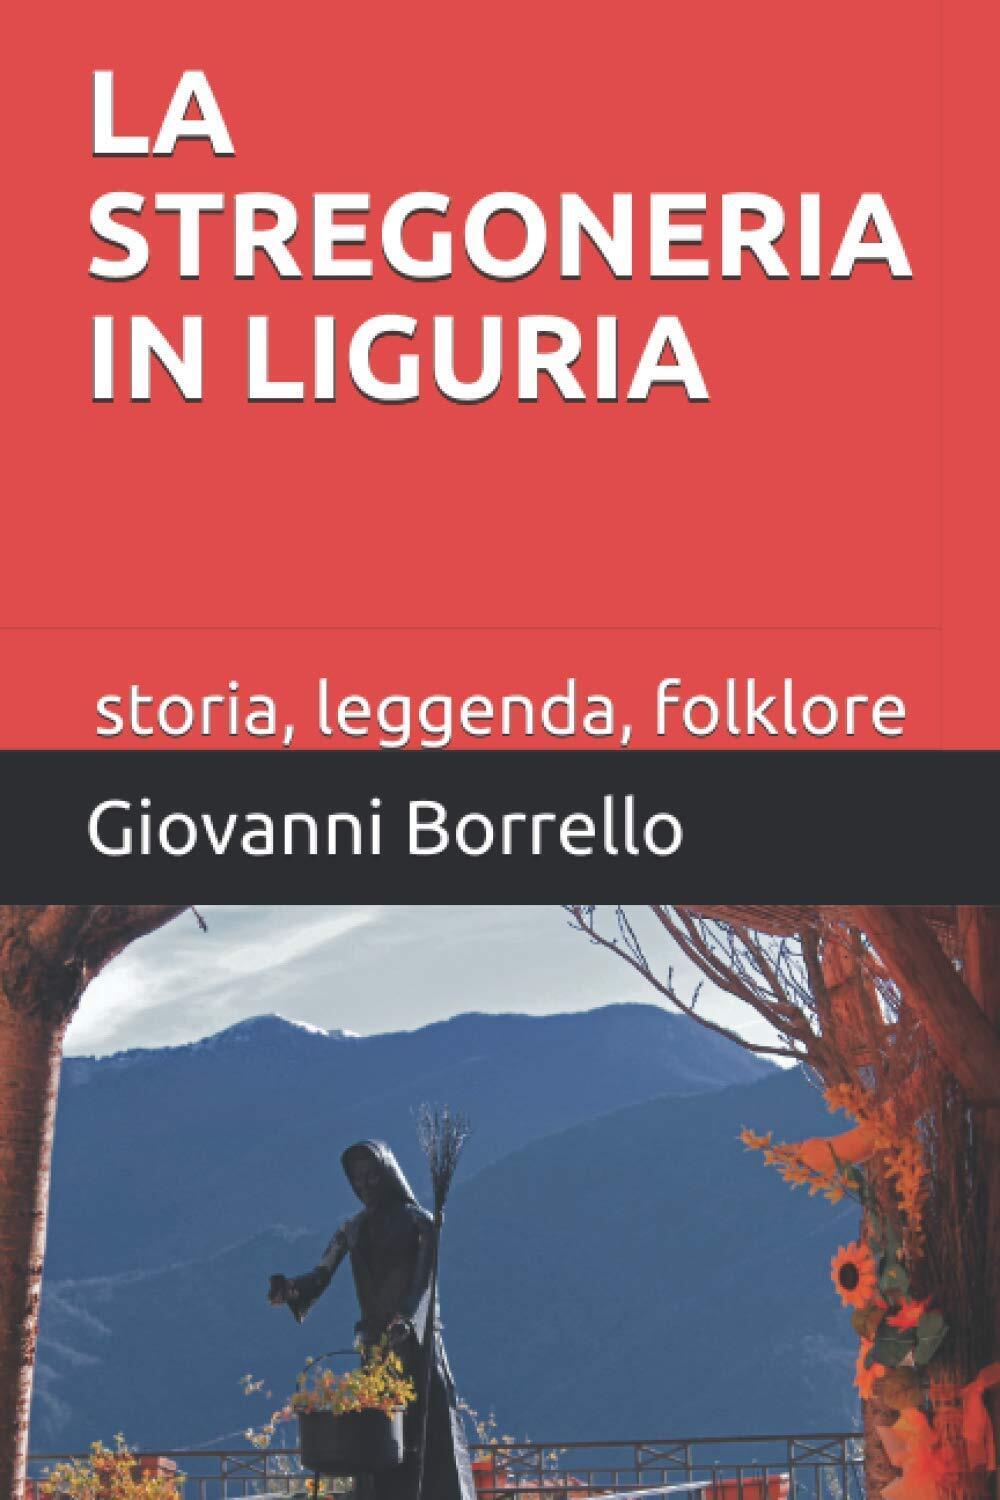 La stregoneria in Liguria: storia, leggenda, folklore - Giovanni Borrello - 2020